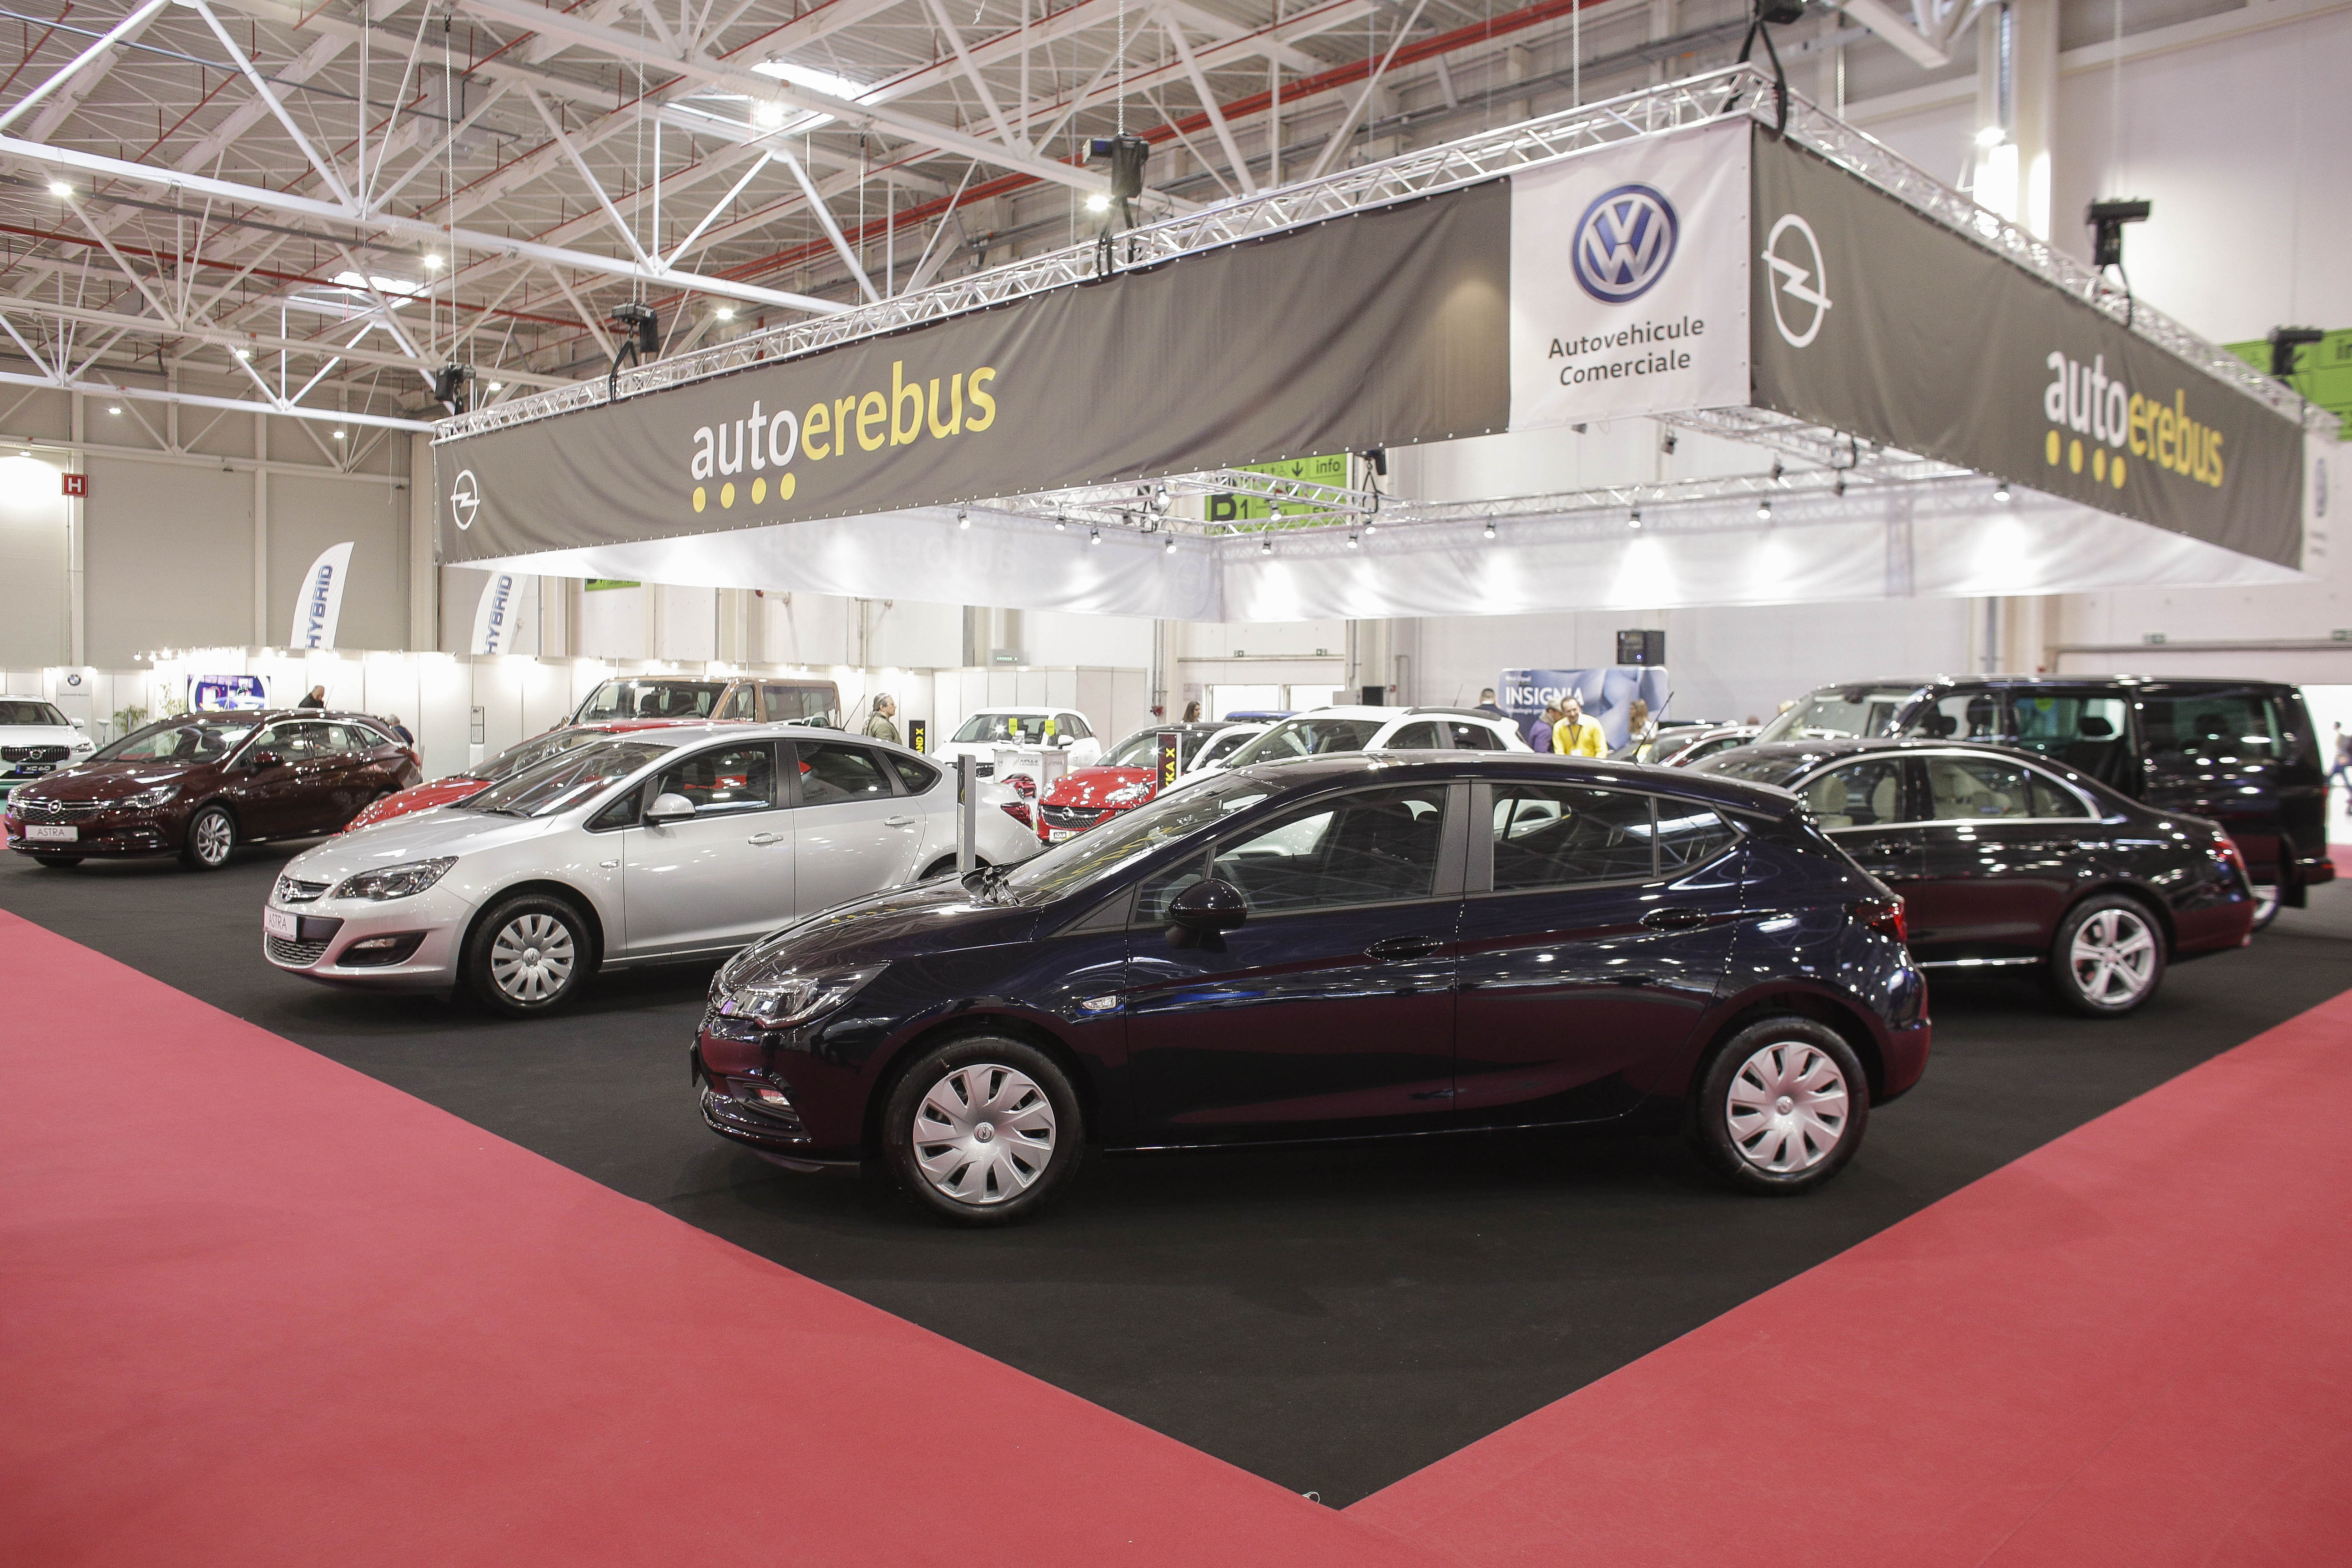 Auto Erebus, dealer autorizat Opel, aduce la SIAB 2018 o premieră națională